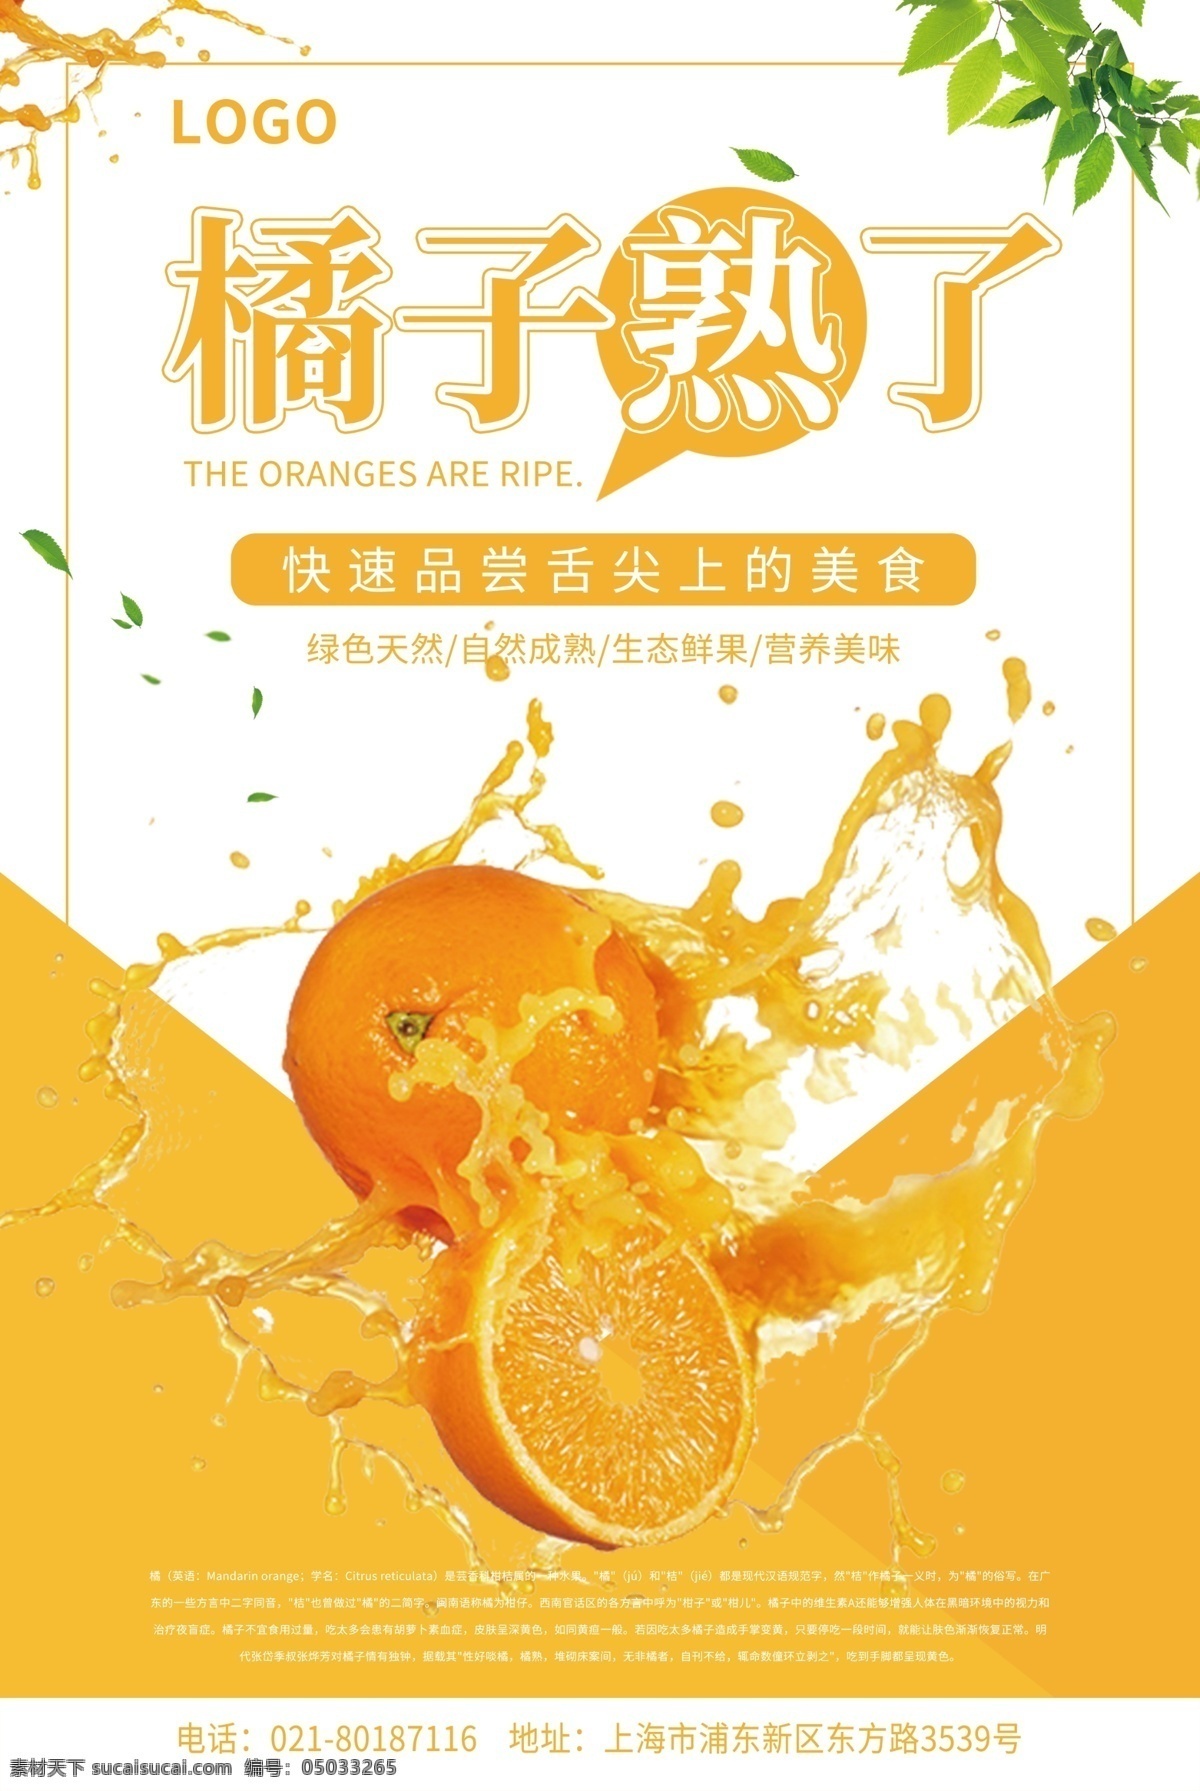 橘子 熟 水果 宣传海报 橘子熟了 橙子 橙色 黄色 鲜果 营养 健康 美味 美食 新鲜 有机 绿色天然 海报 水果海报